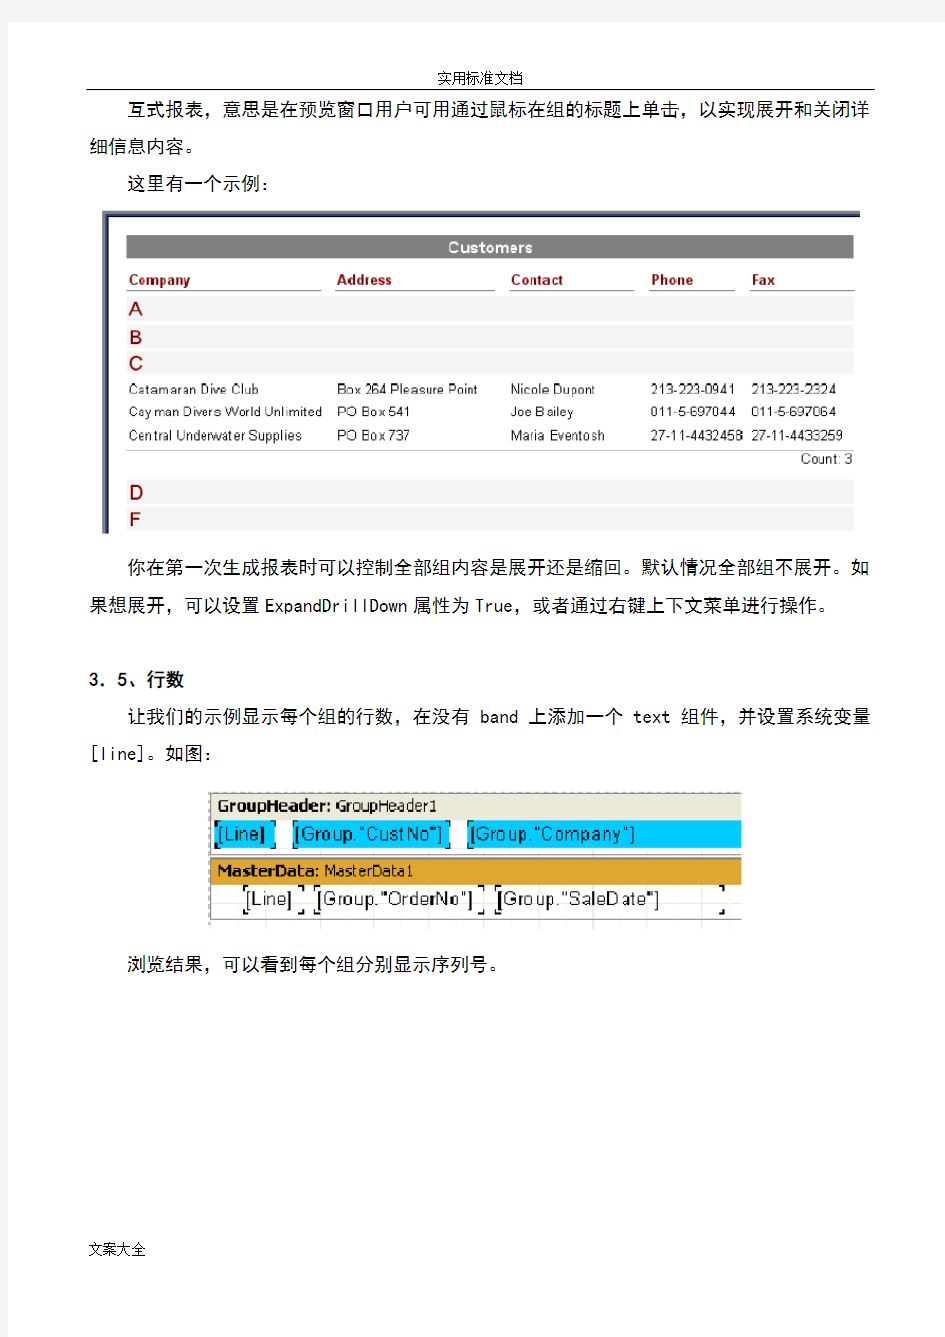 快速报表系统FastReport4用户使用手册簿_修改版(3)